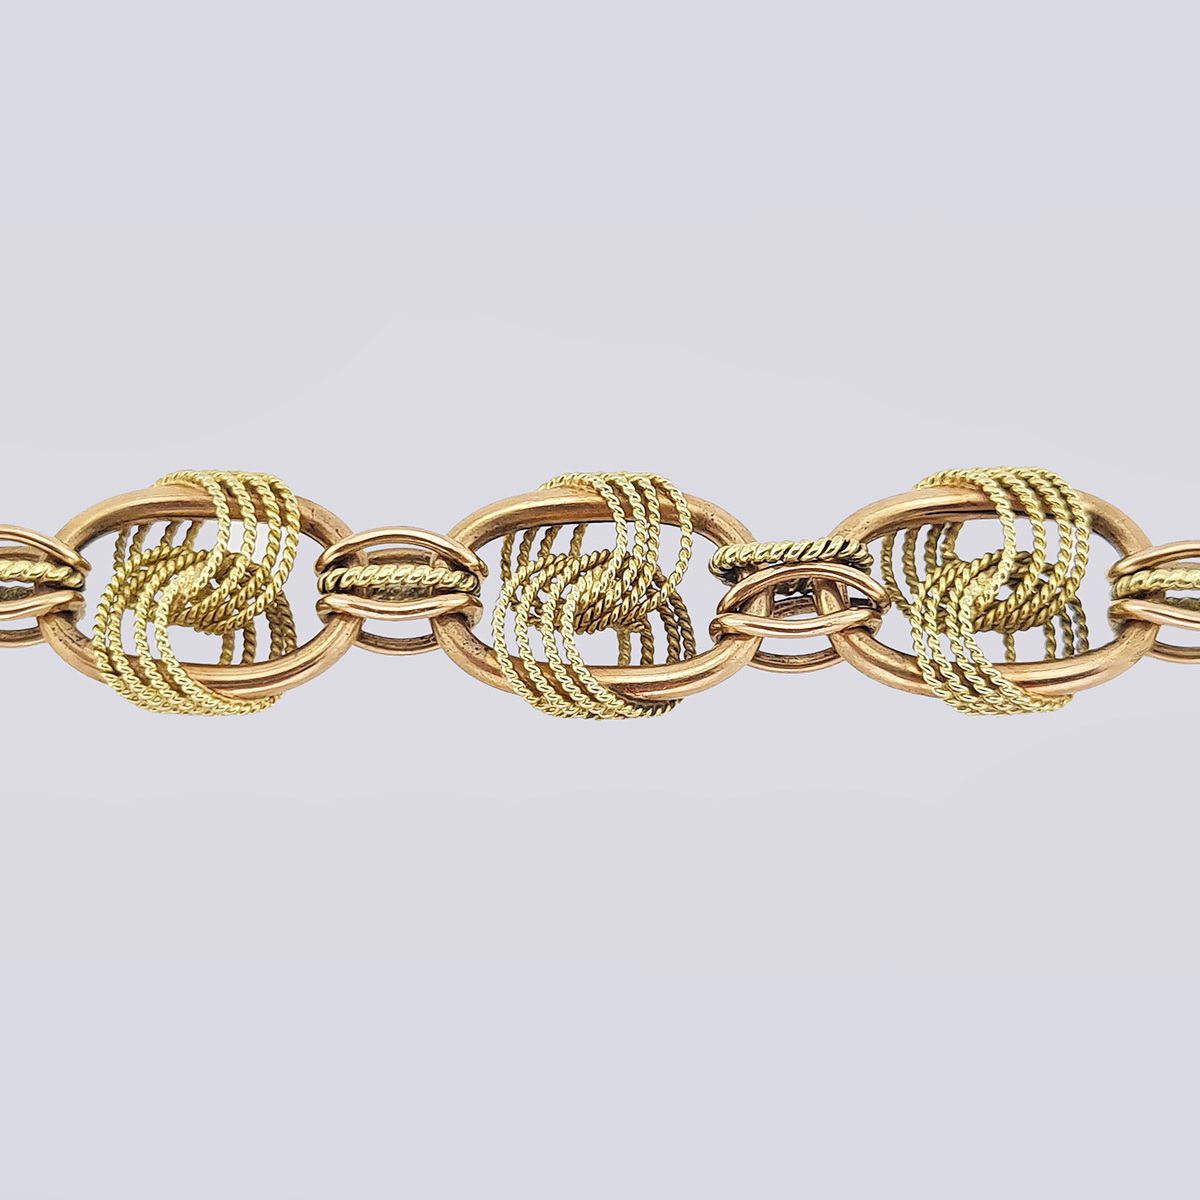 Золотой браслет со сложными узлами из двухцветного золота конца 19 века (21 см, 585 проба)